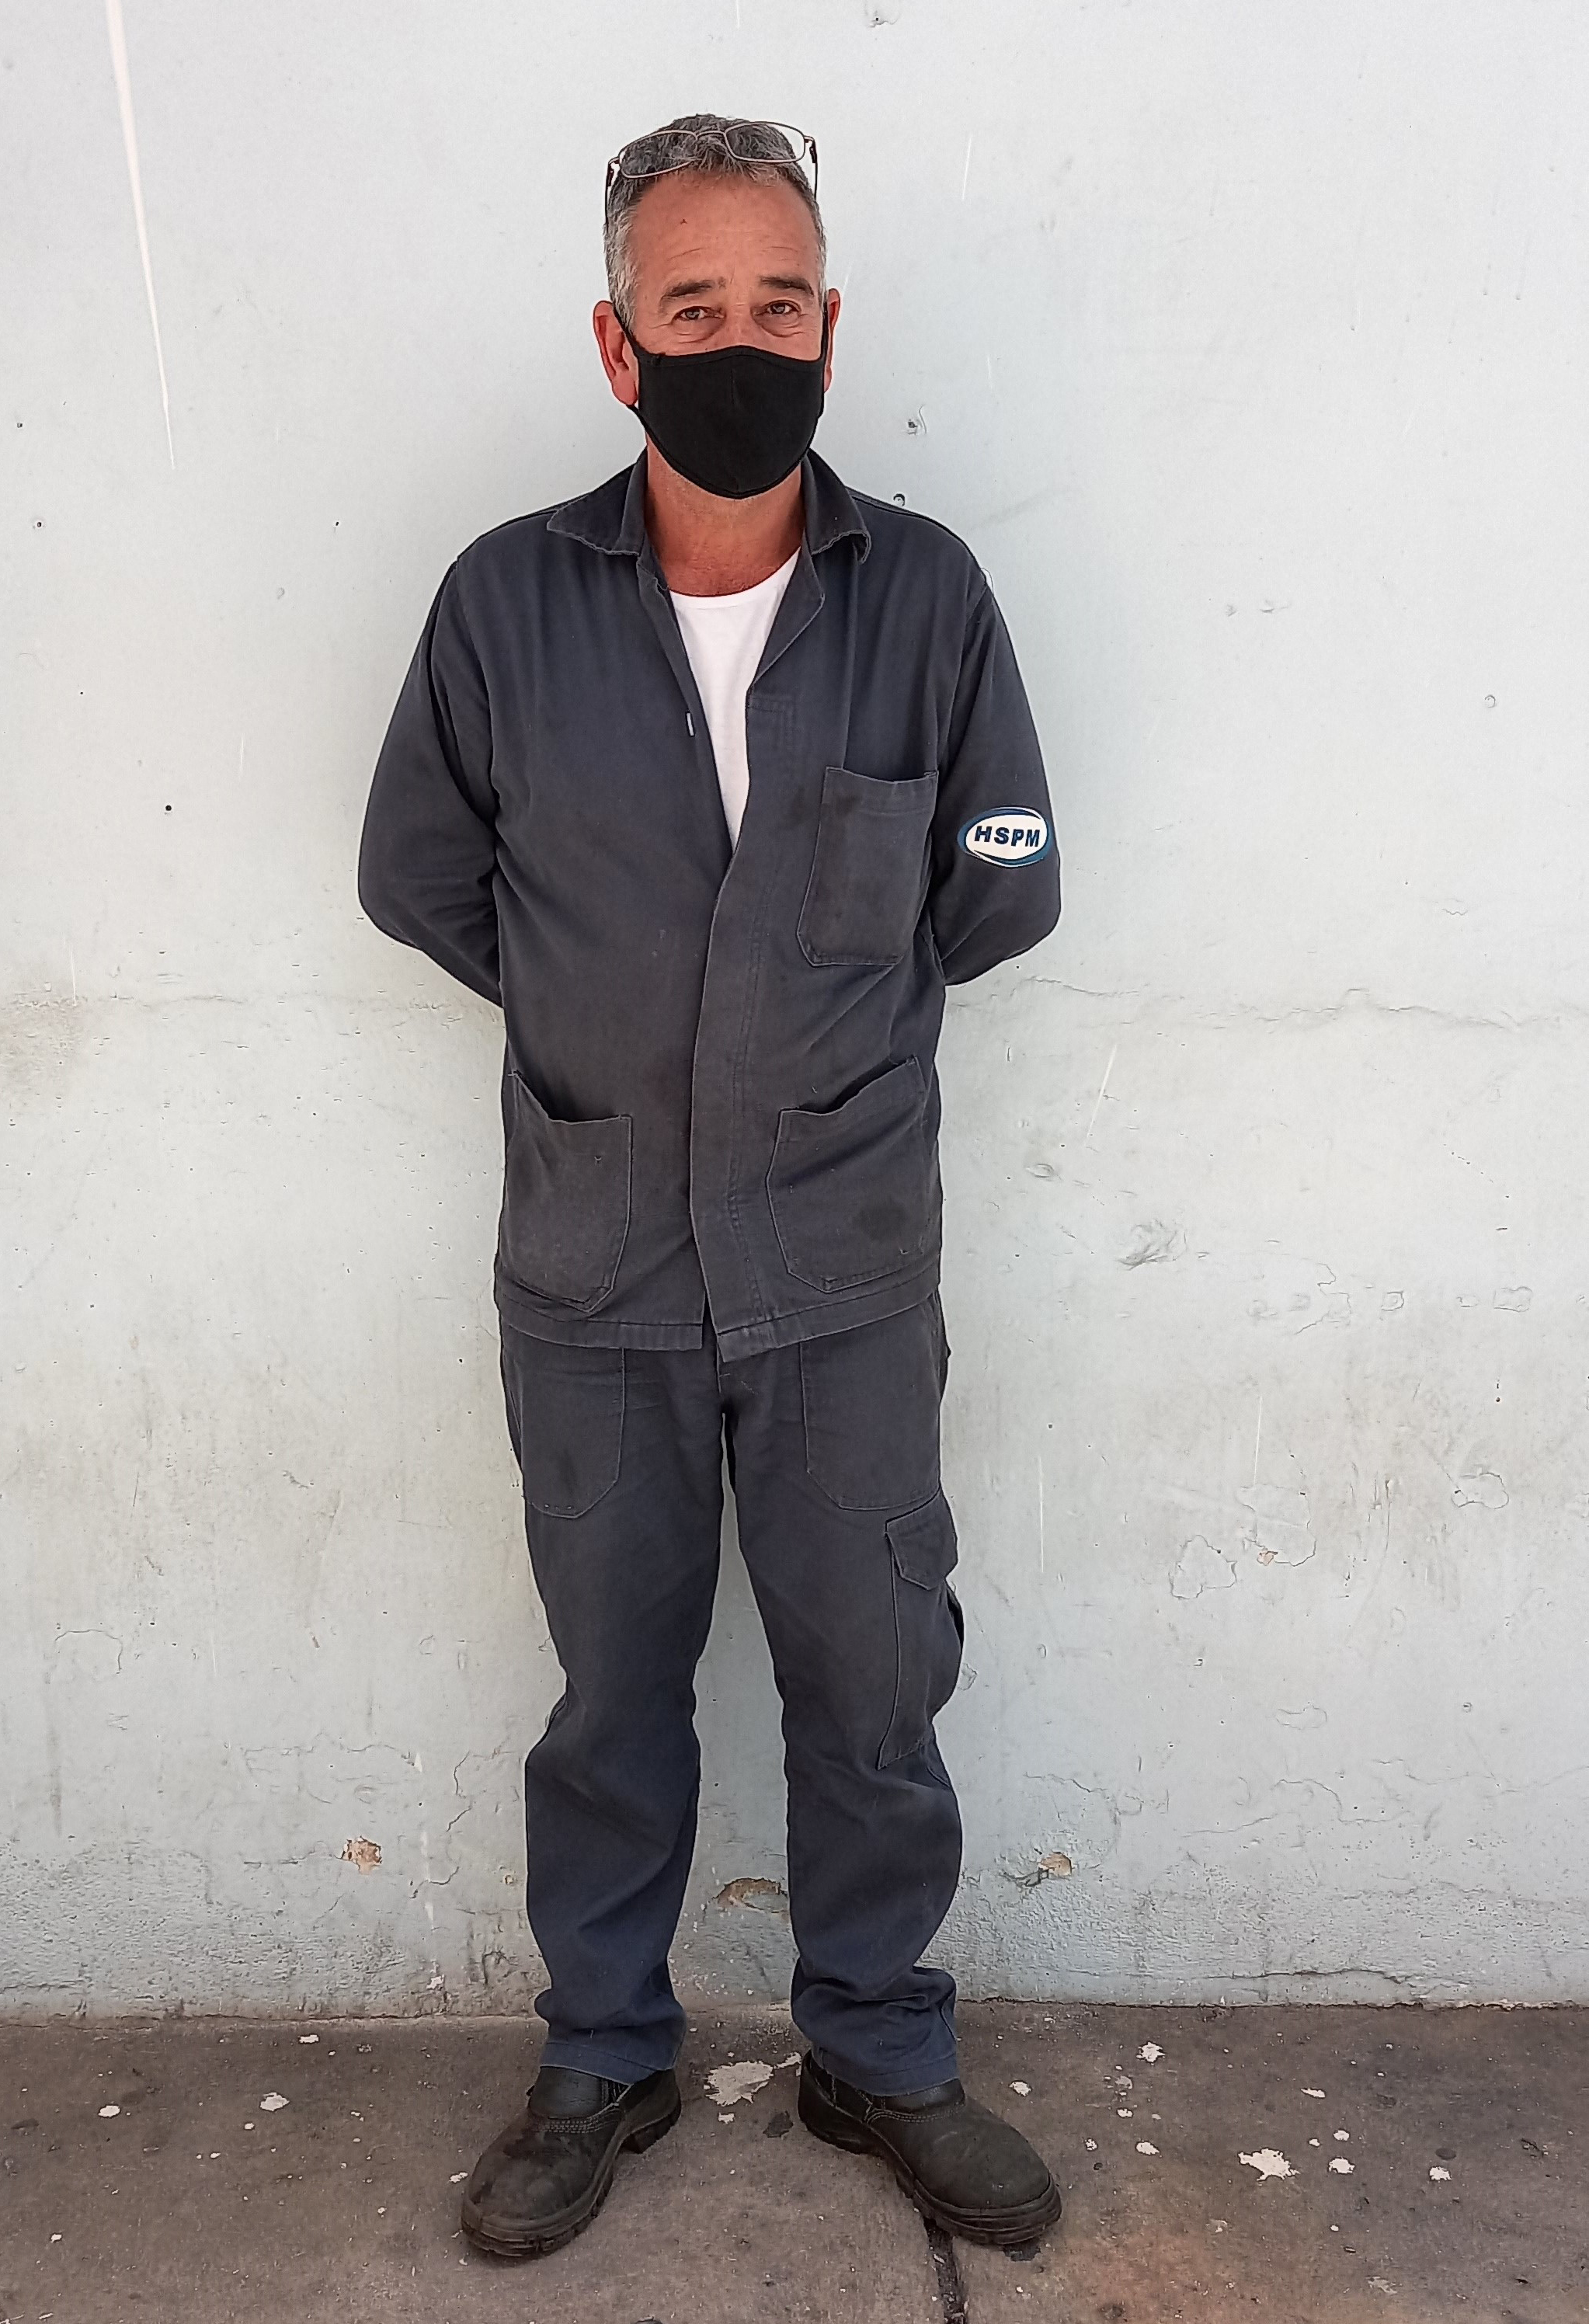 Foto do serralheiro do hospital, de uniforme cinza, em pé em frente a uma parede branca